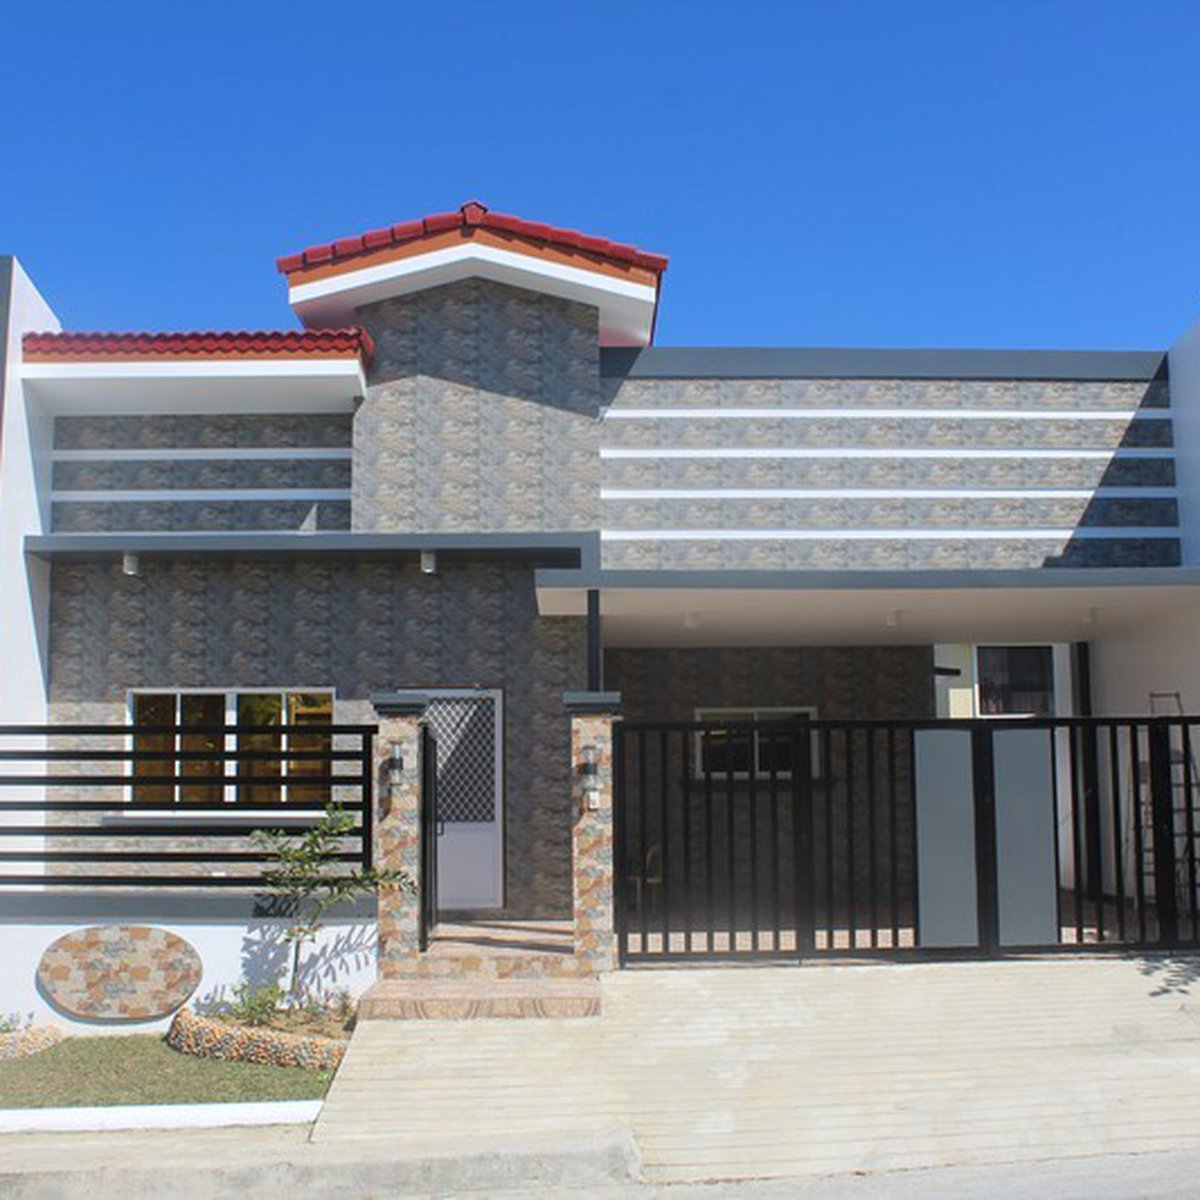 3-bedroom Single Detached House For Sale in Mandaue Cebu